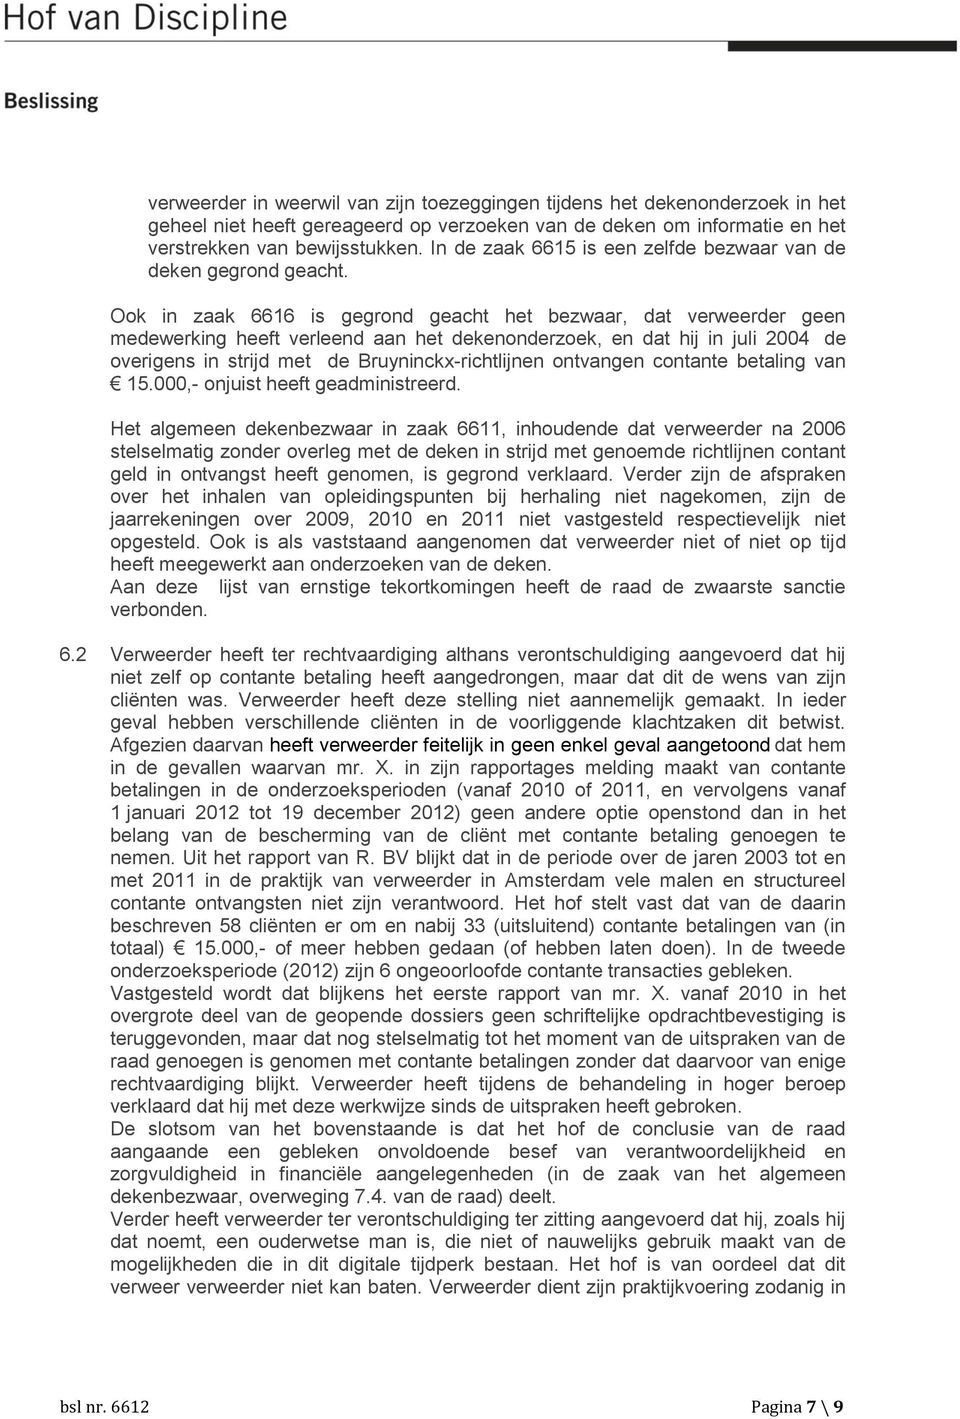 Ook in zaak 6616 is gegrond geacht het bezwaar, dat verweerder geen medewerking heeft verleend aan het dekenonderzoek, en dat hij in juli 2004 de overigens in strijd met de Bruyninckx-richtlijnen